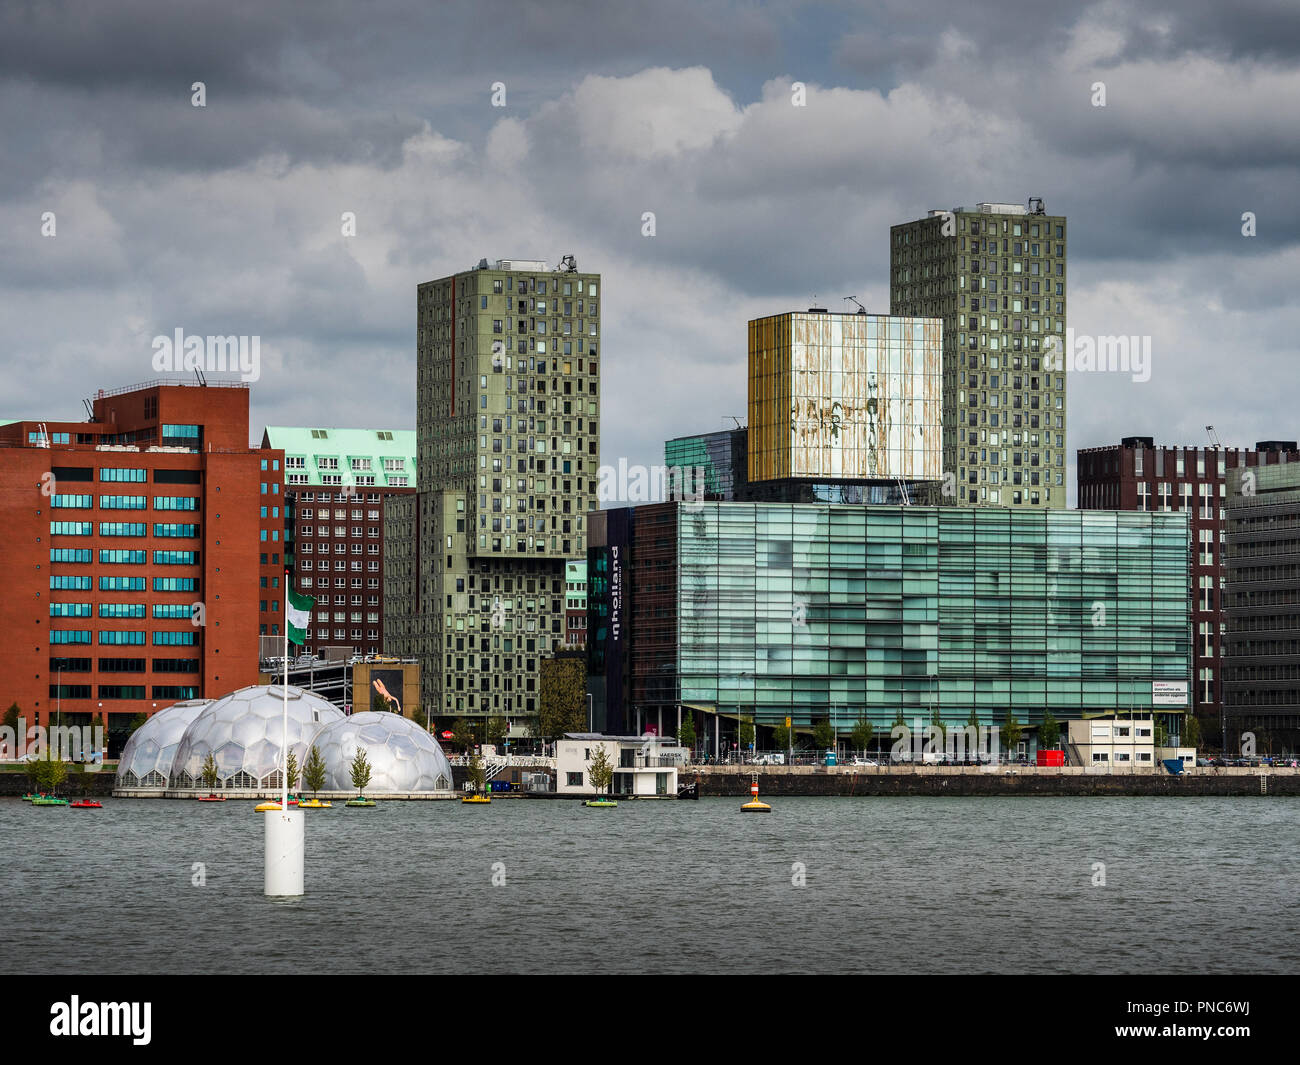 La città di Rotterdam Harbour Rijnhaven - Waterfront architettura con il padiglione flottante Foto Stock